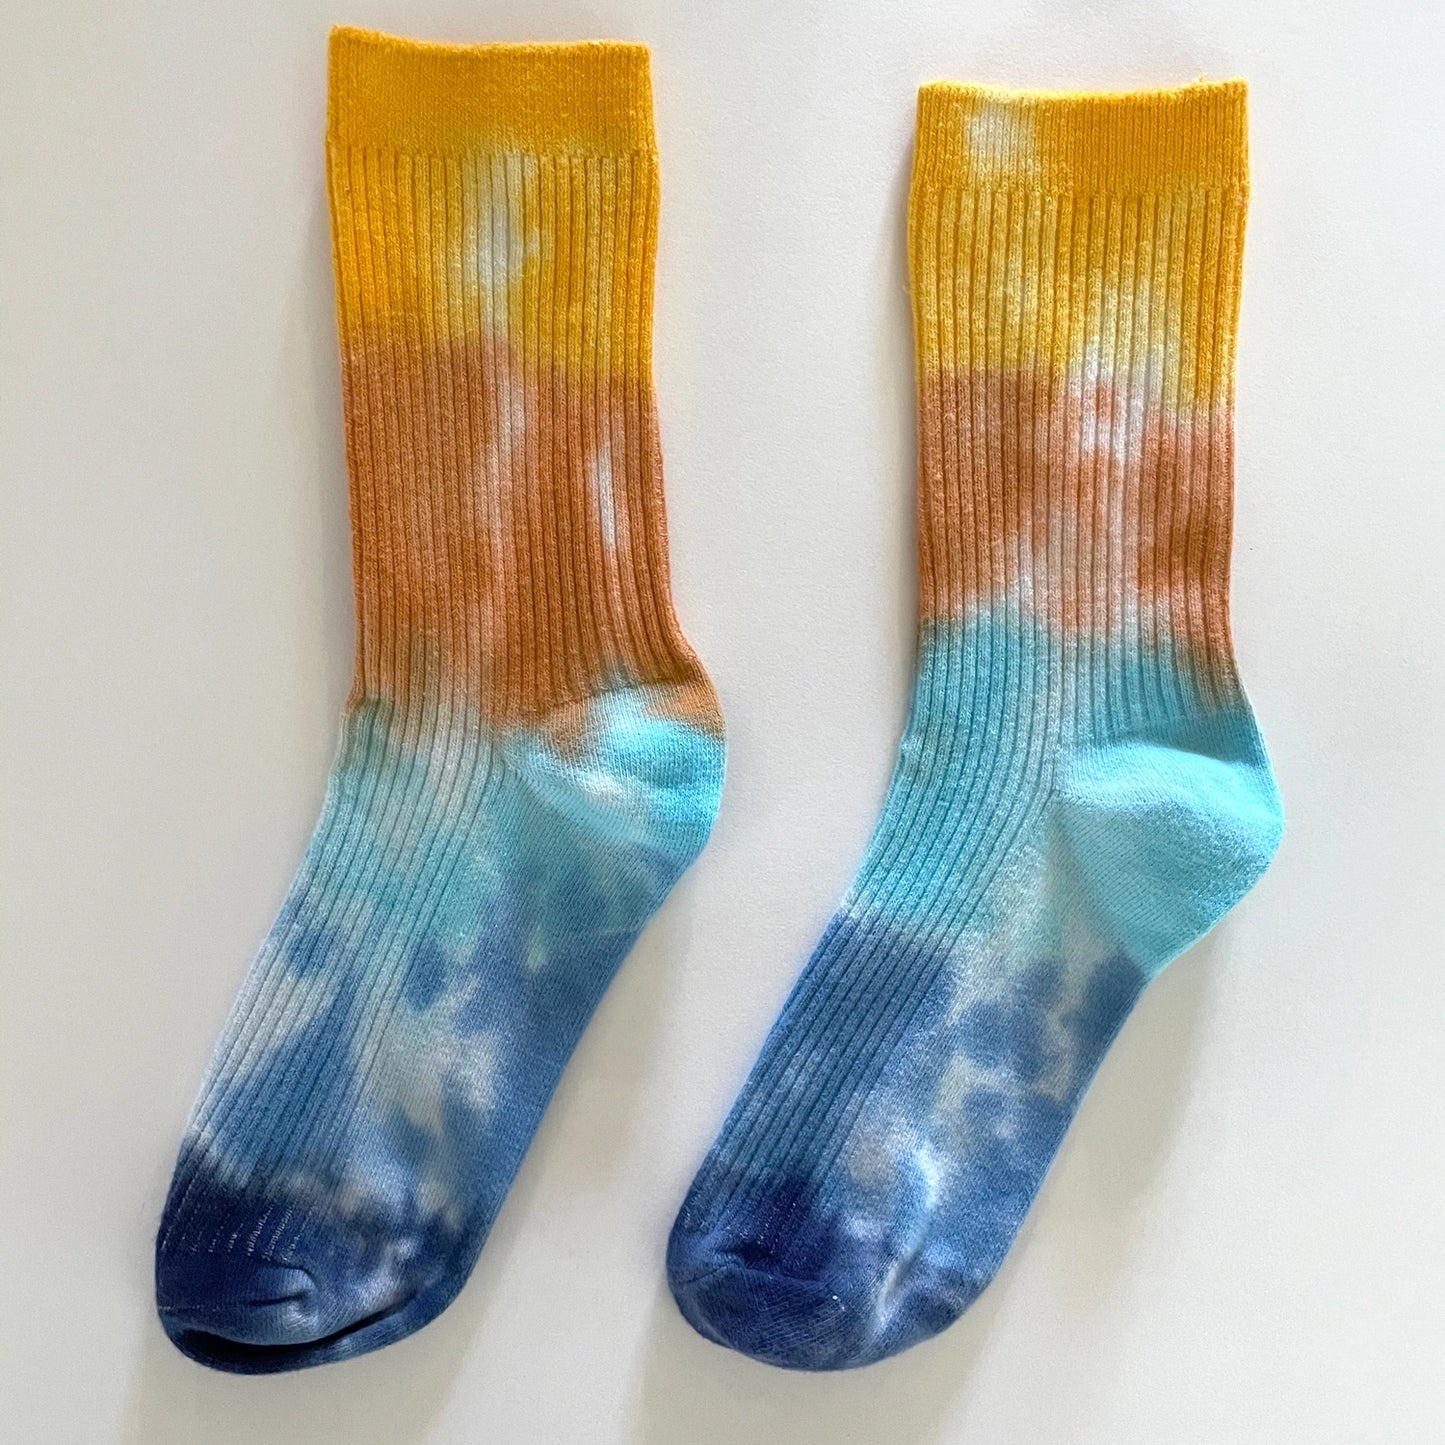 Merle Works - Ocean Ave Tie-dyed Dressy Socks